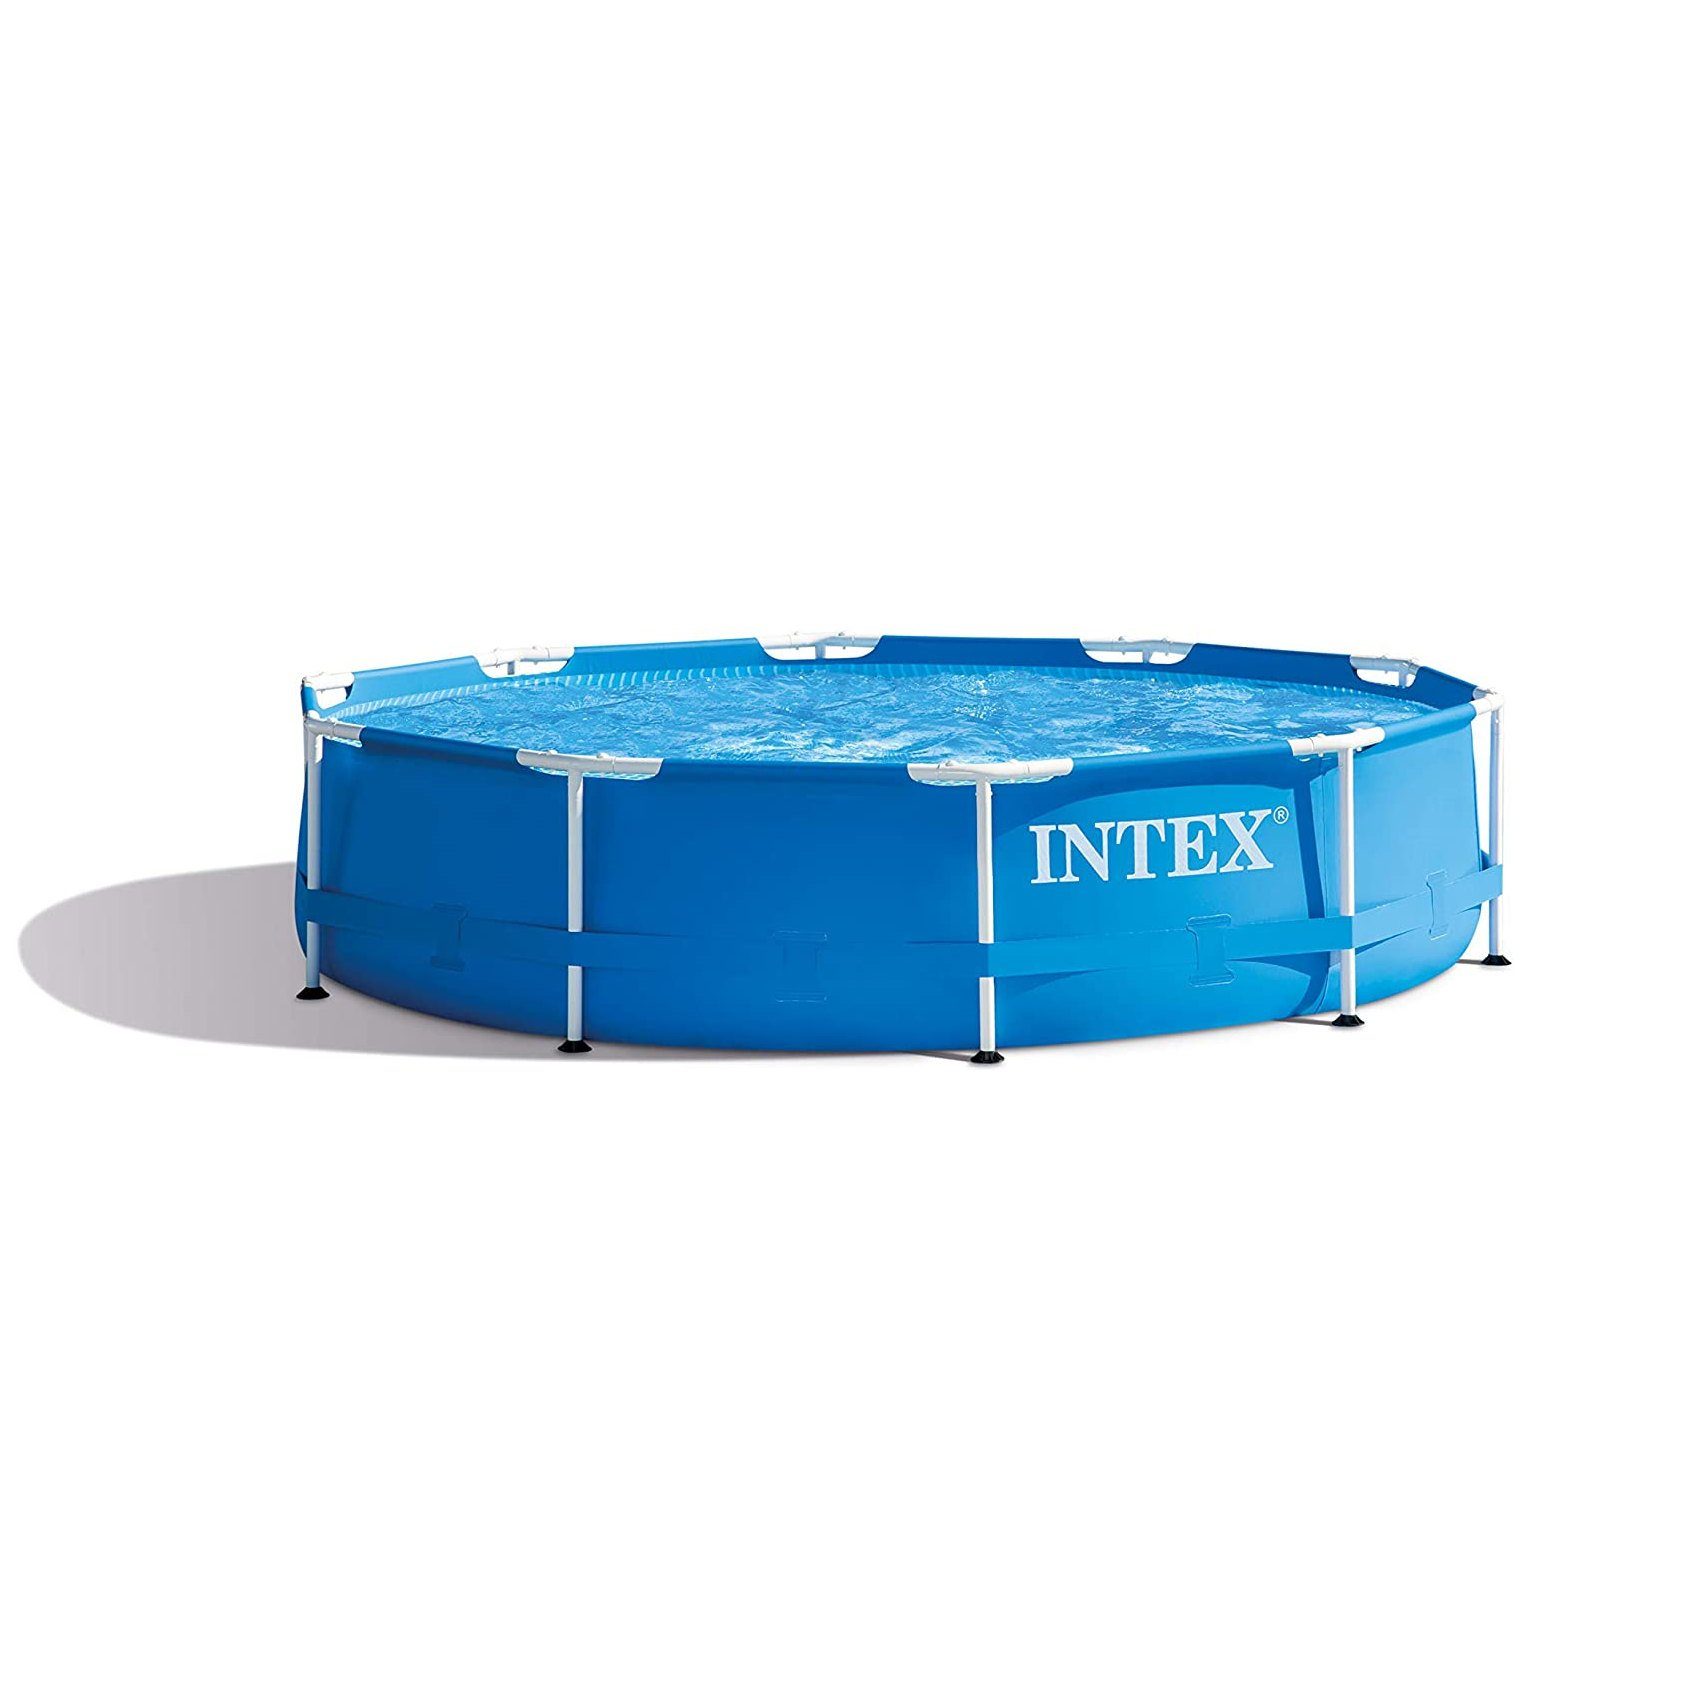 Intex Pool INTEX 28202GN MetallFramePool-Set mit GS-Pumpe